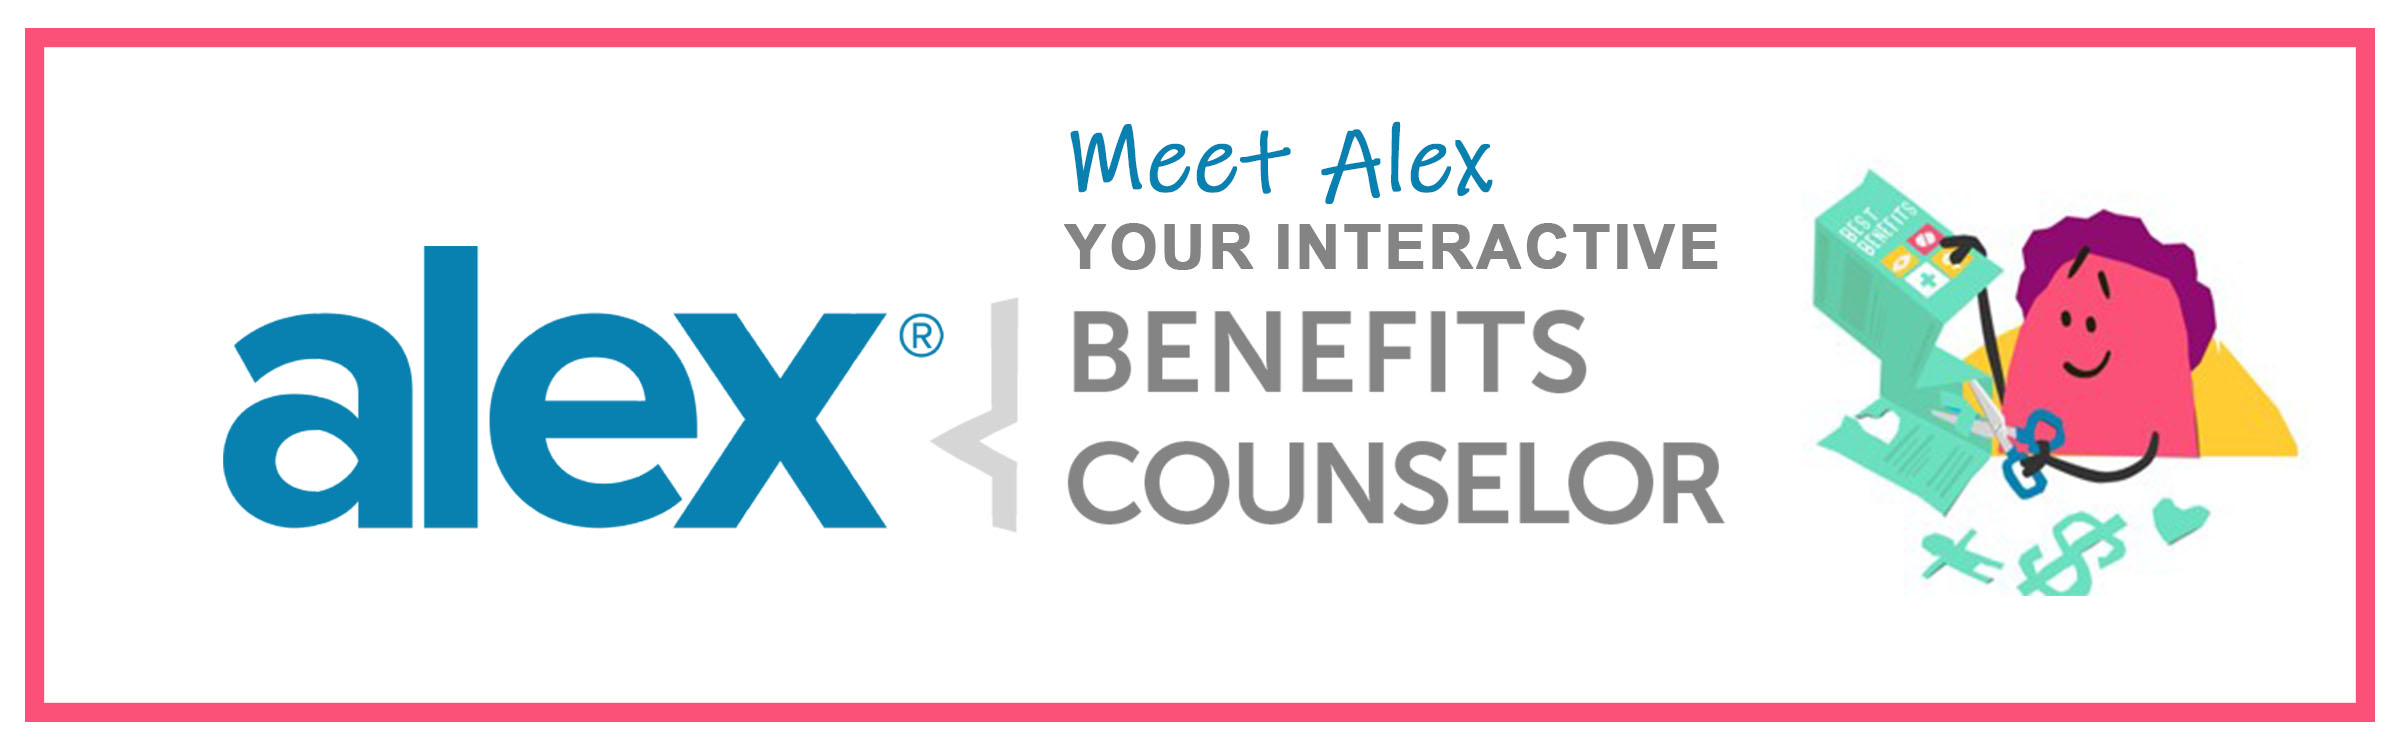 alex-benefits-counselor-slider.jpg